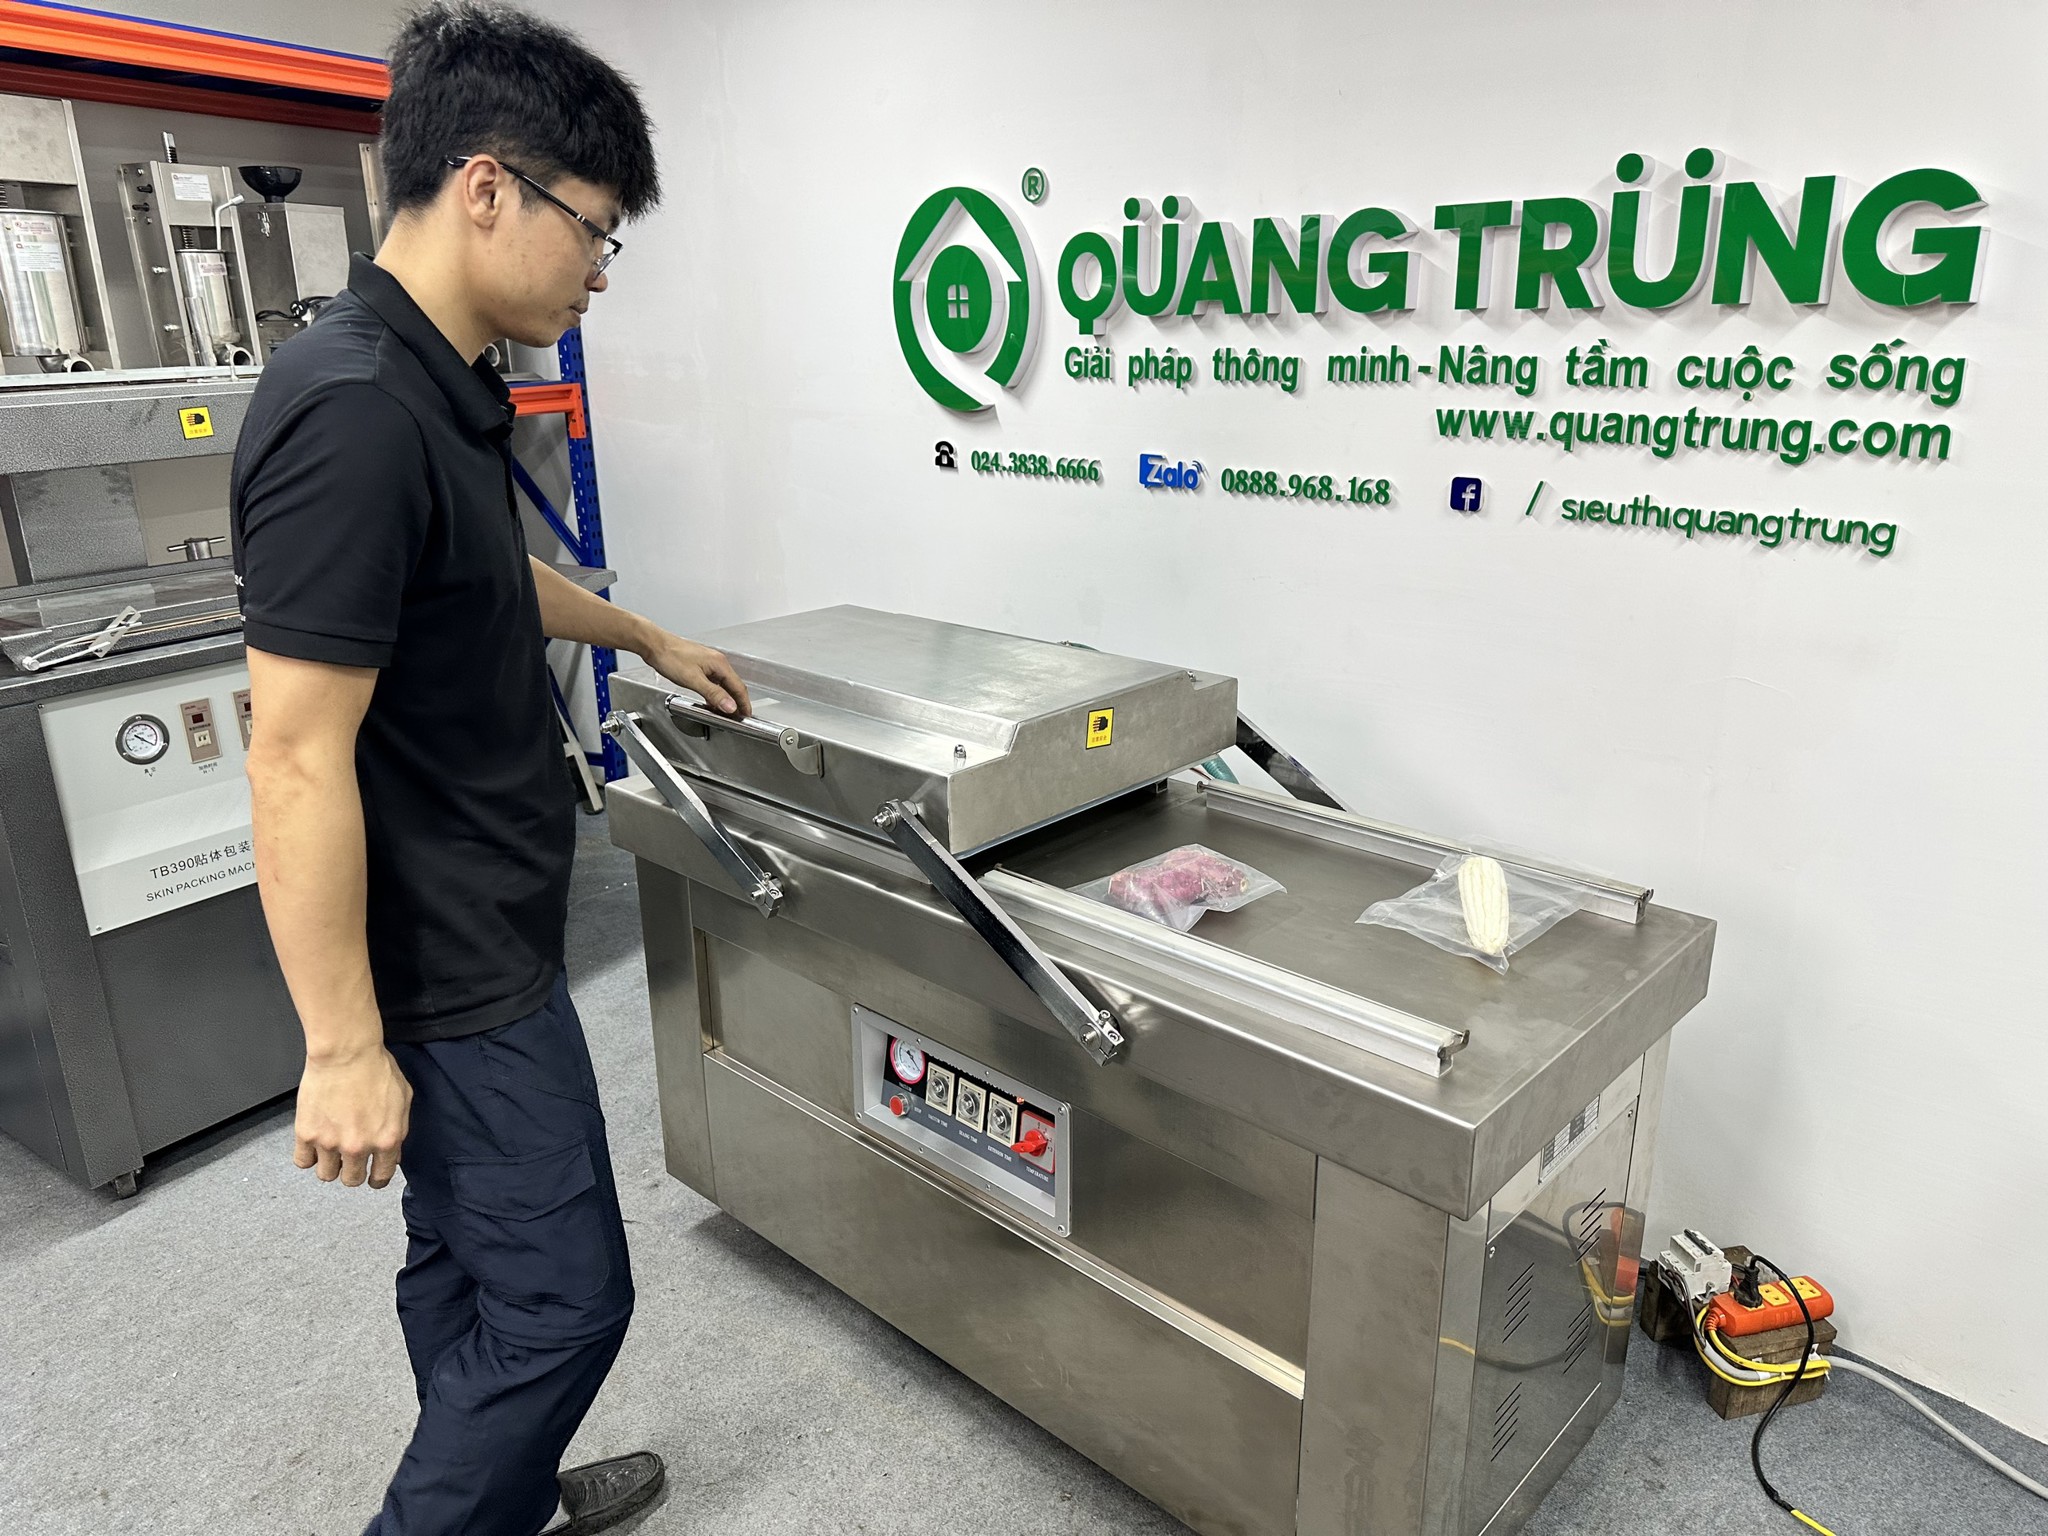 Cách sửa chữa máy đóng gói hút chân không từ A đến Z - Hướng dẫn từ Cơ khí chế tạo máy Quang Trung